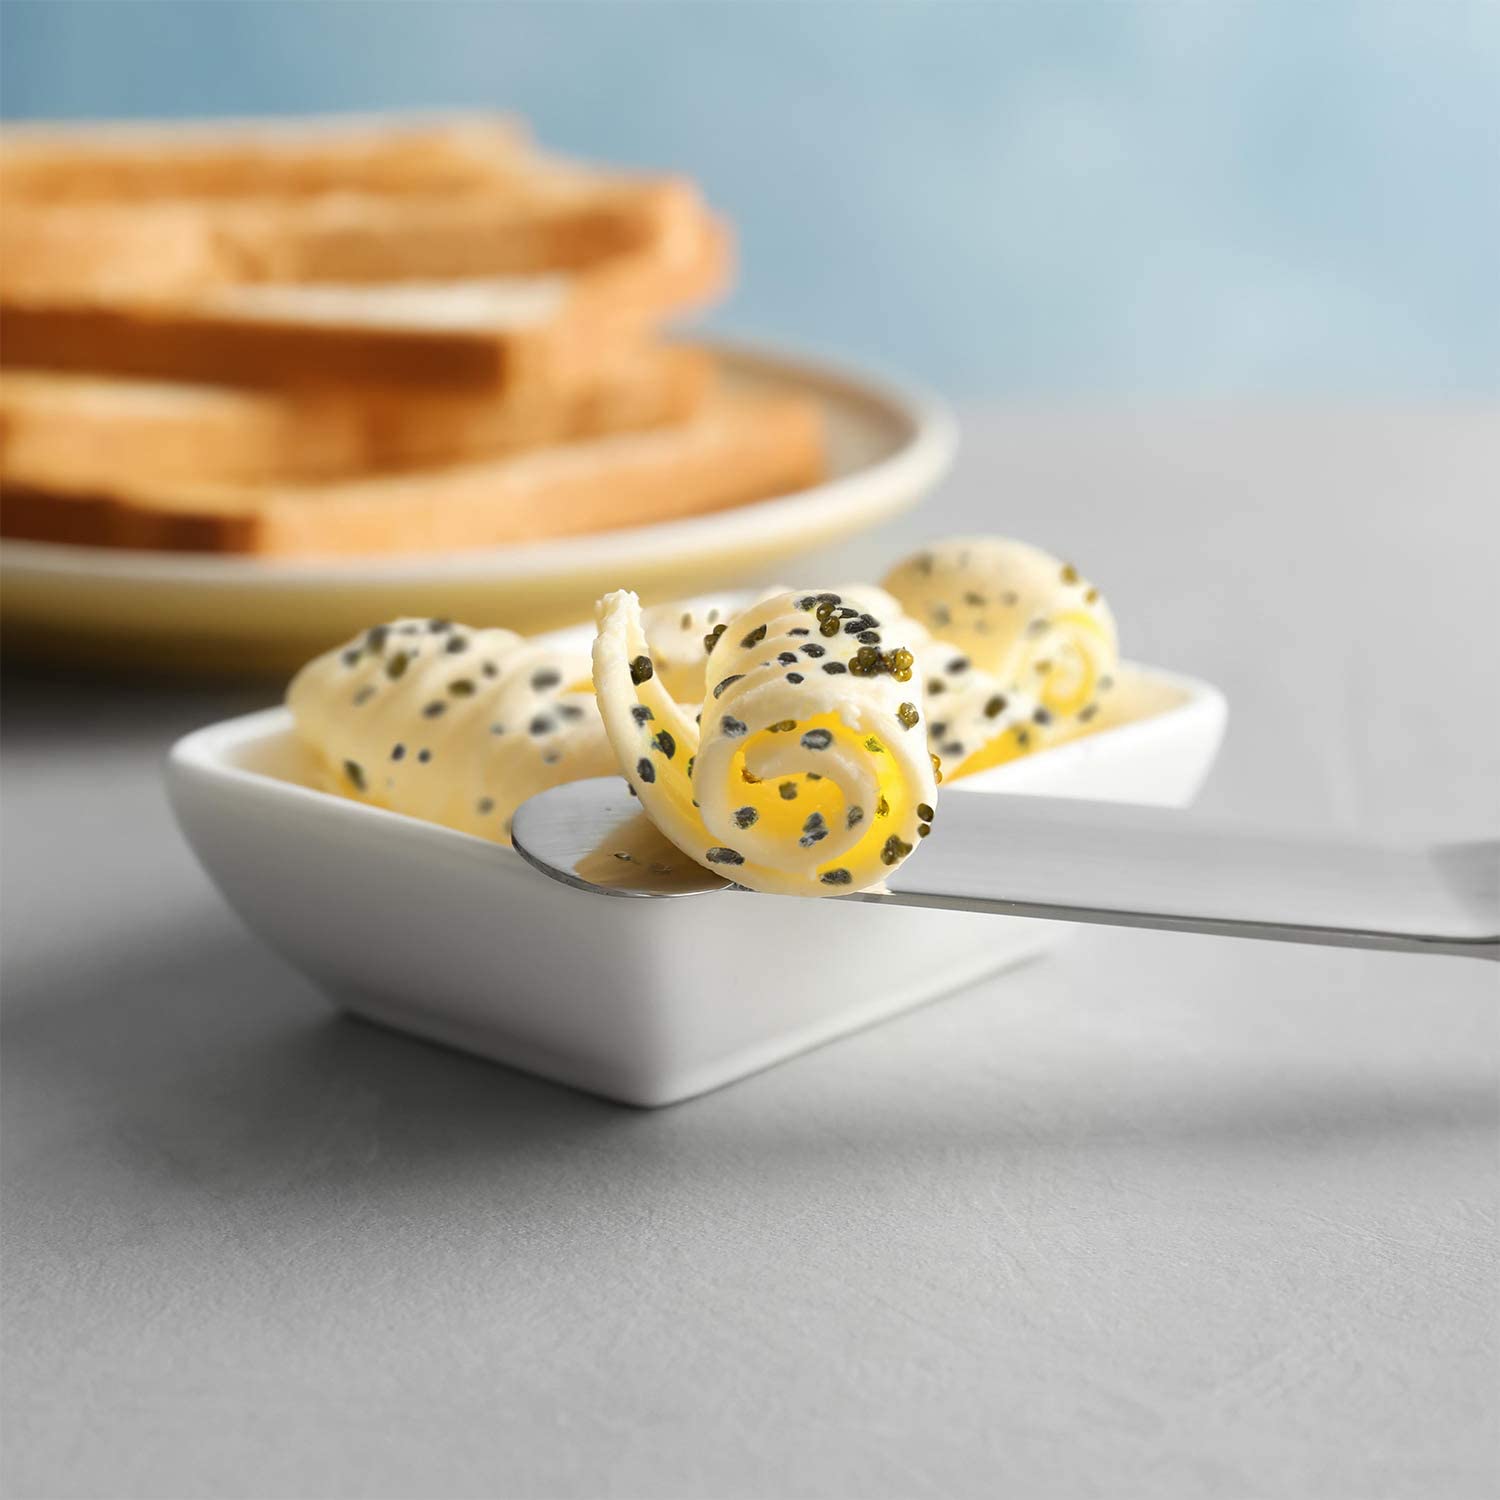 Caviar Butter